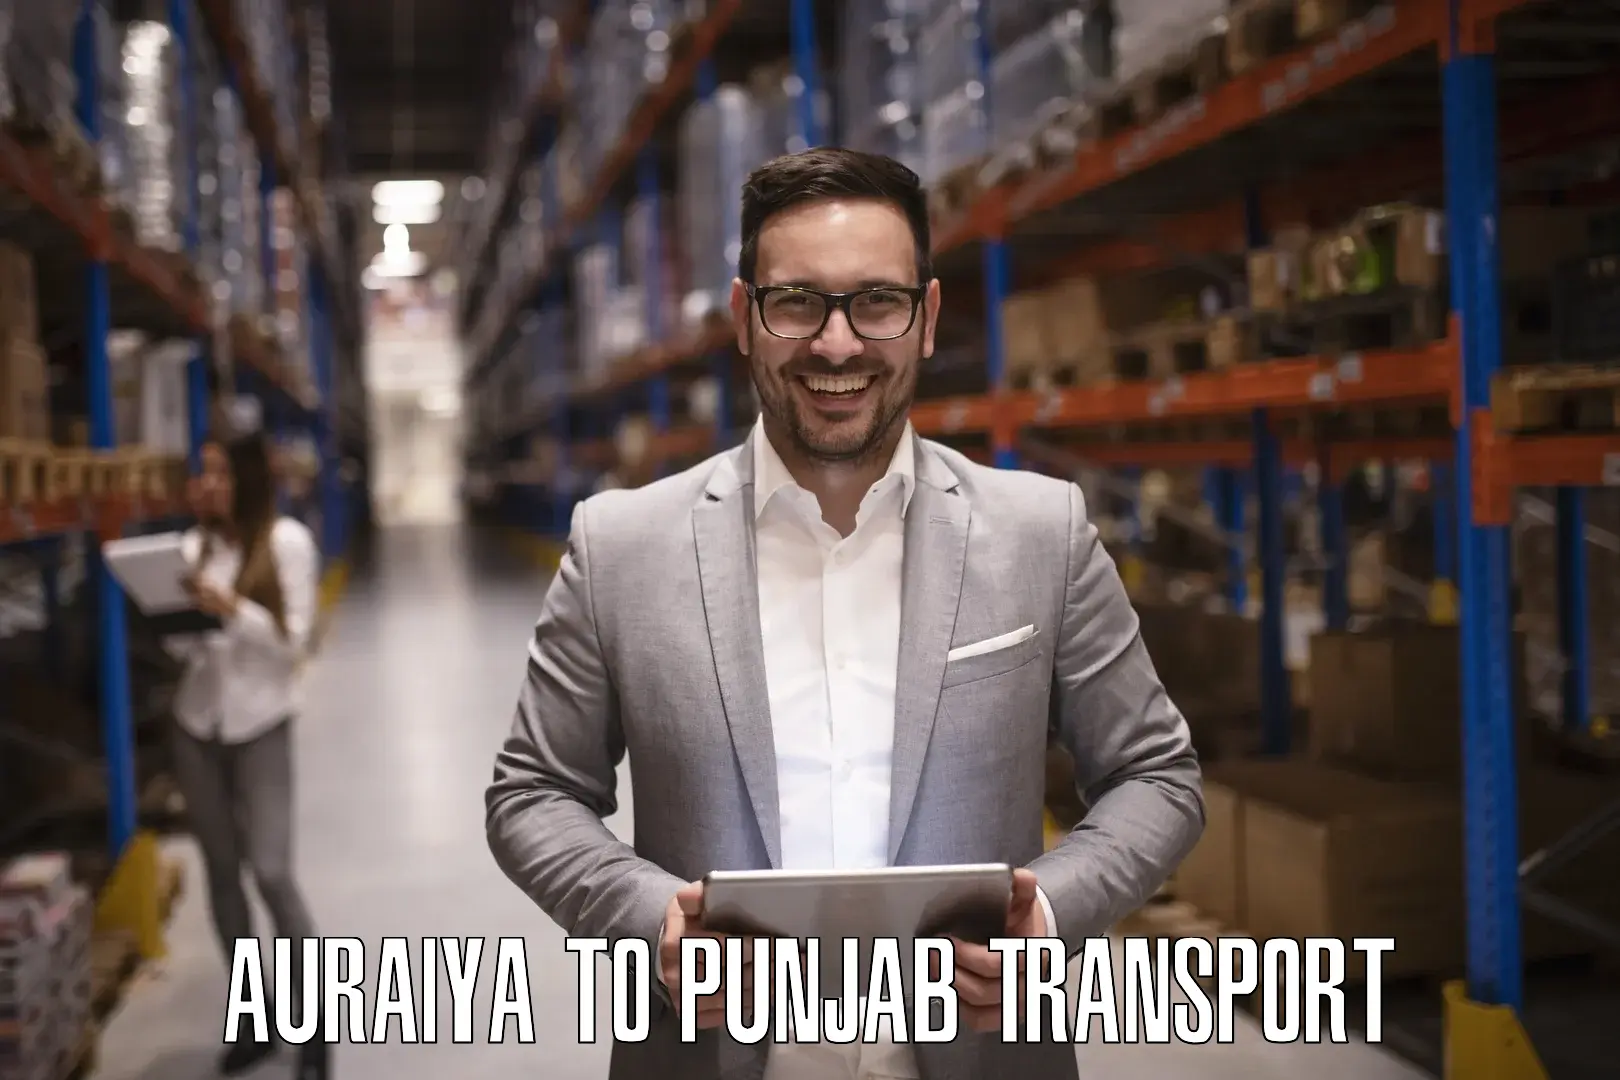 Transport in sharing Auraiya to Punjab